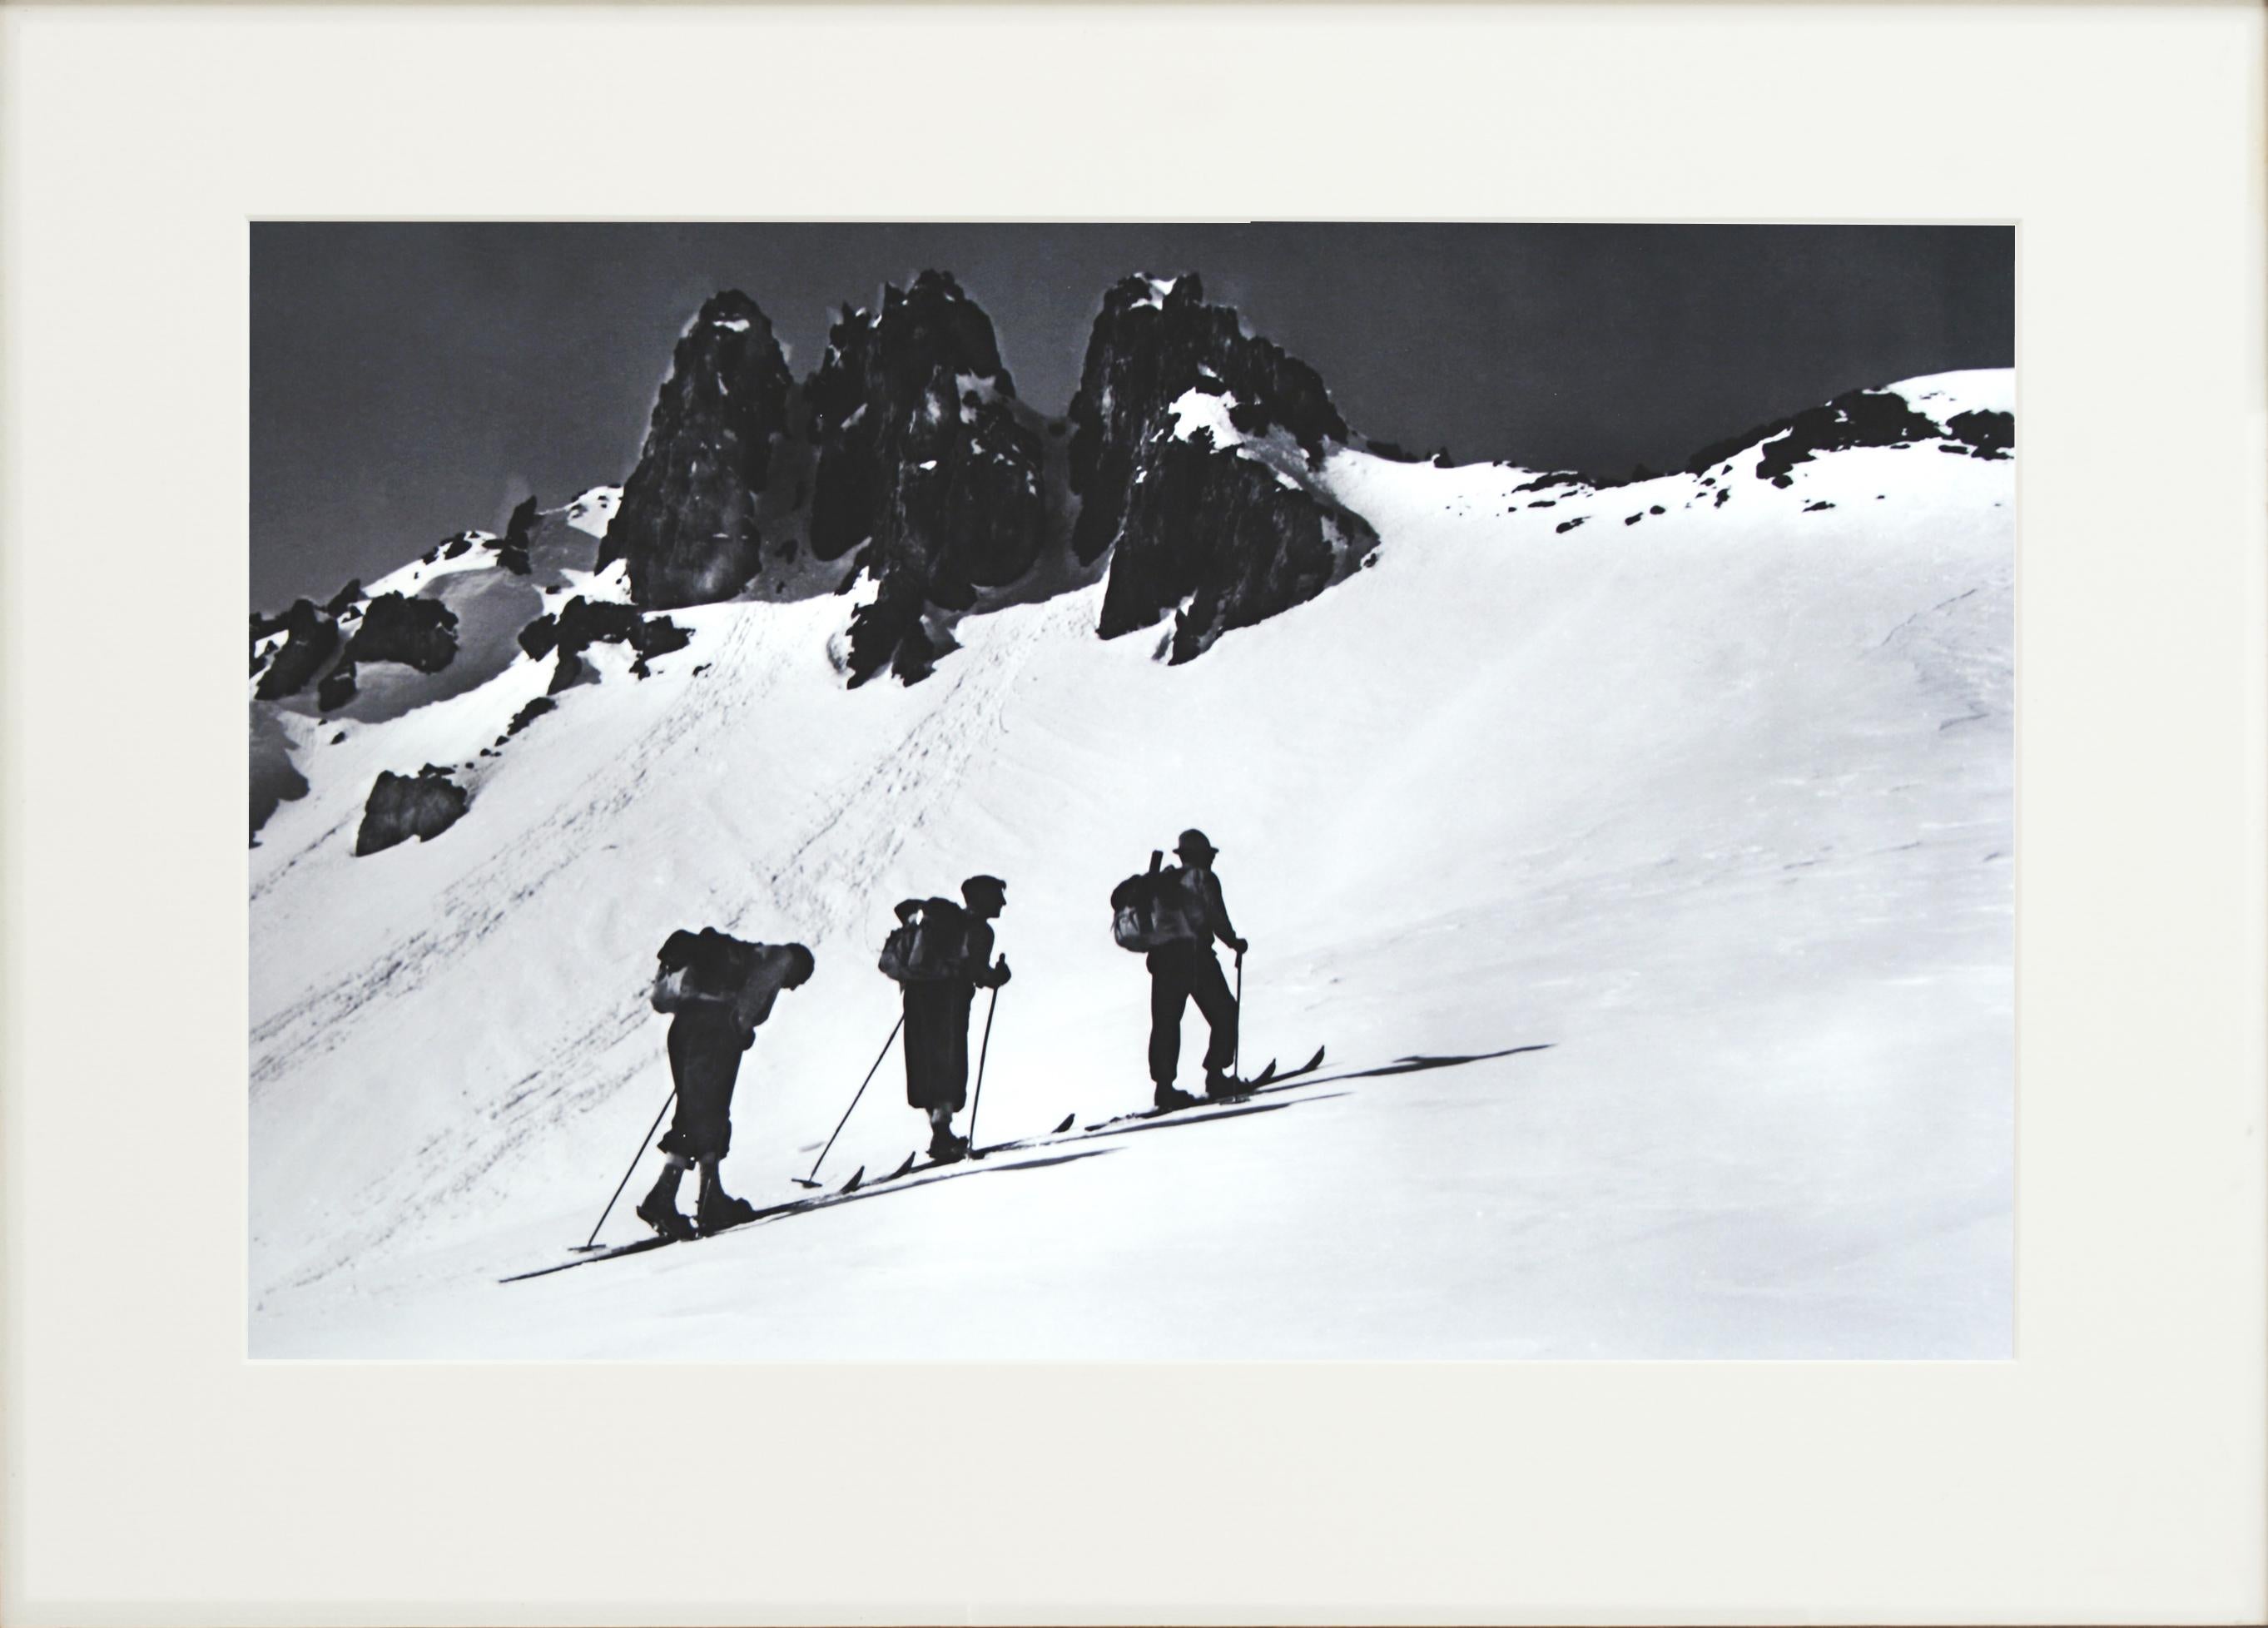 Vintage, Alpinskifotografie.
Three Peaks